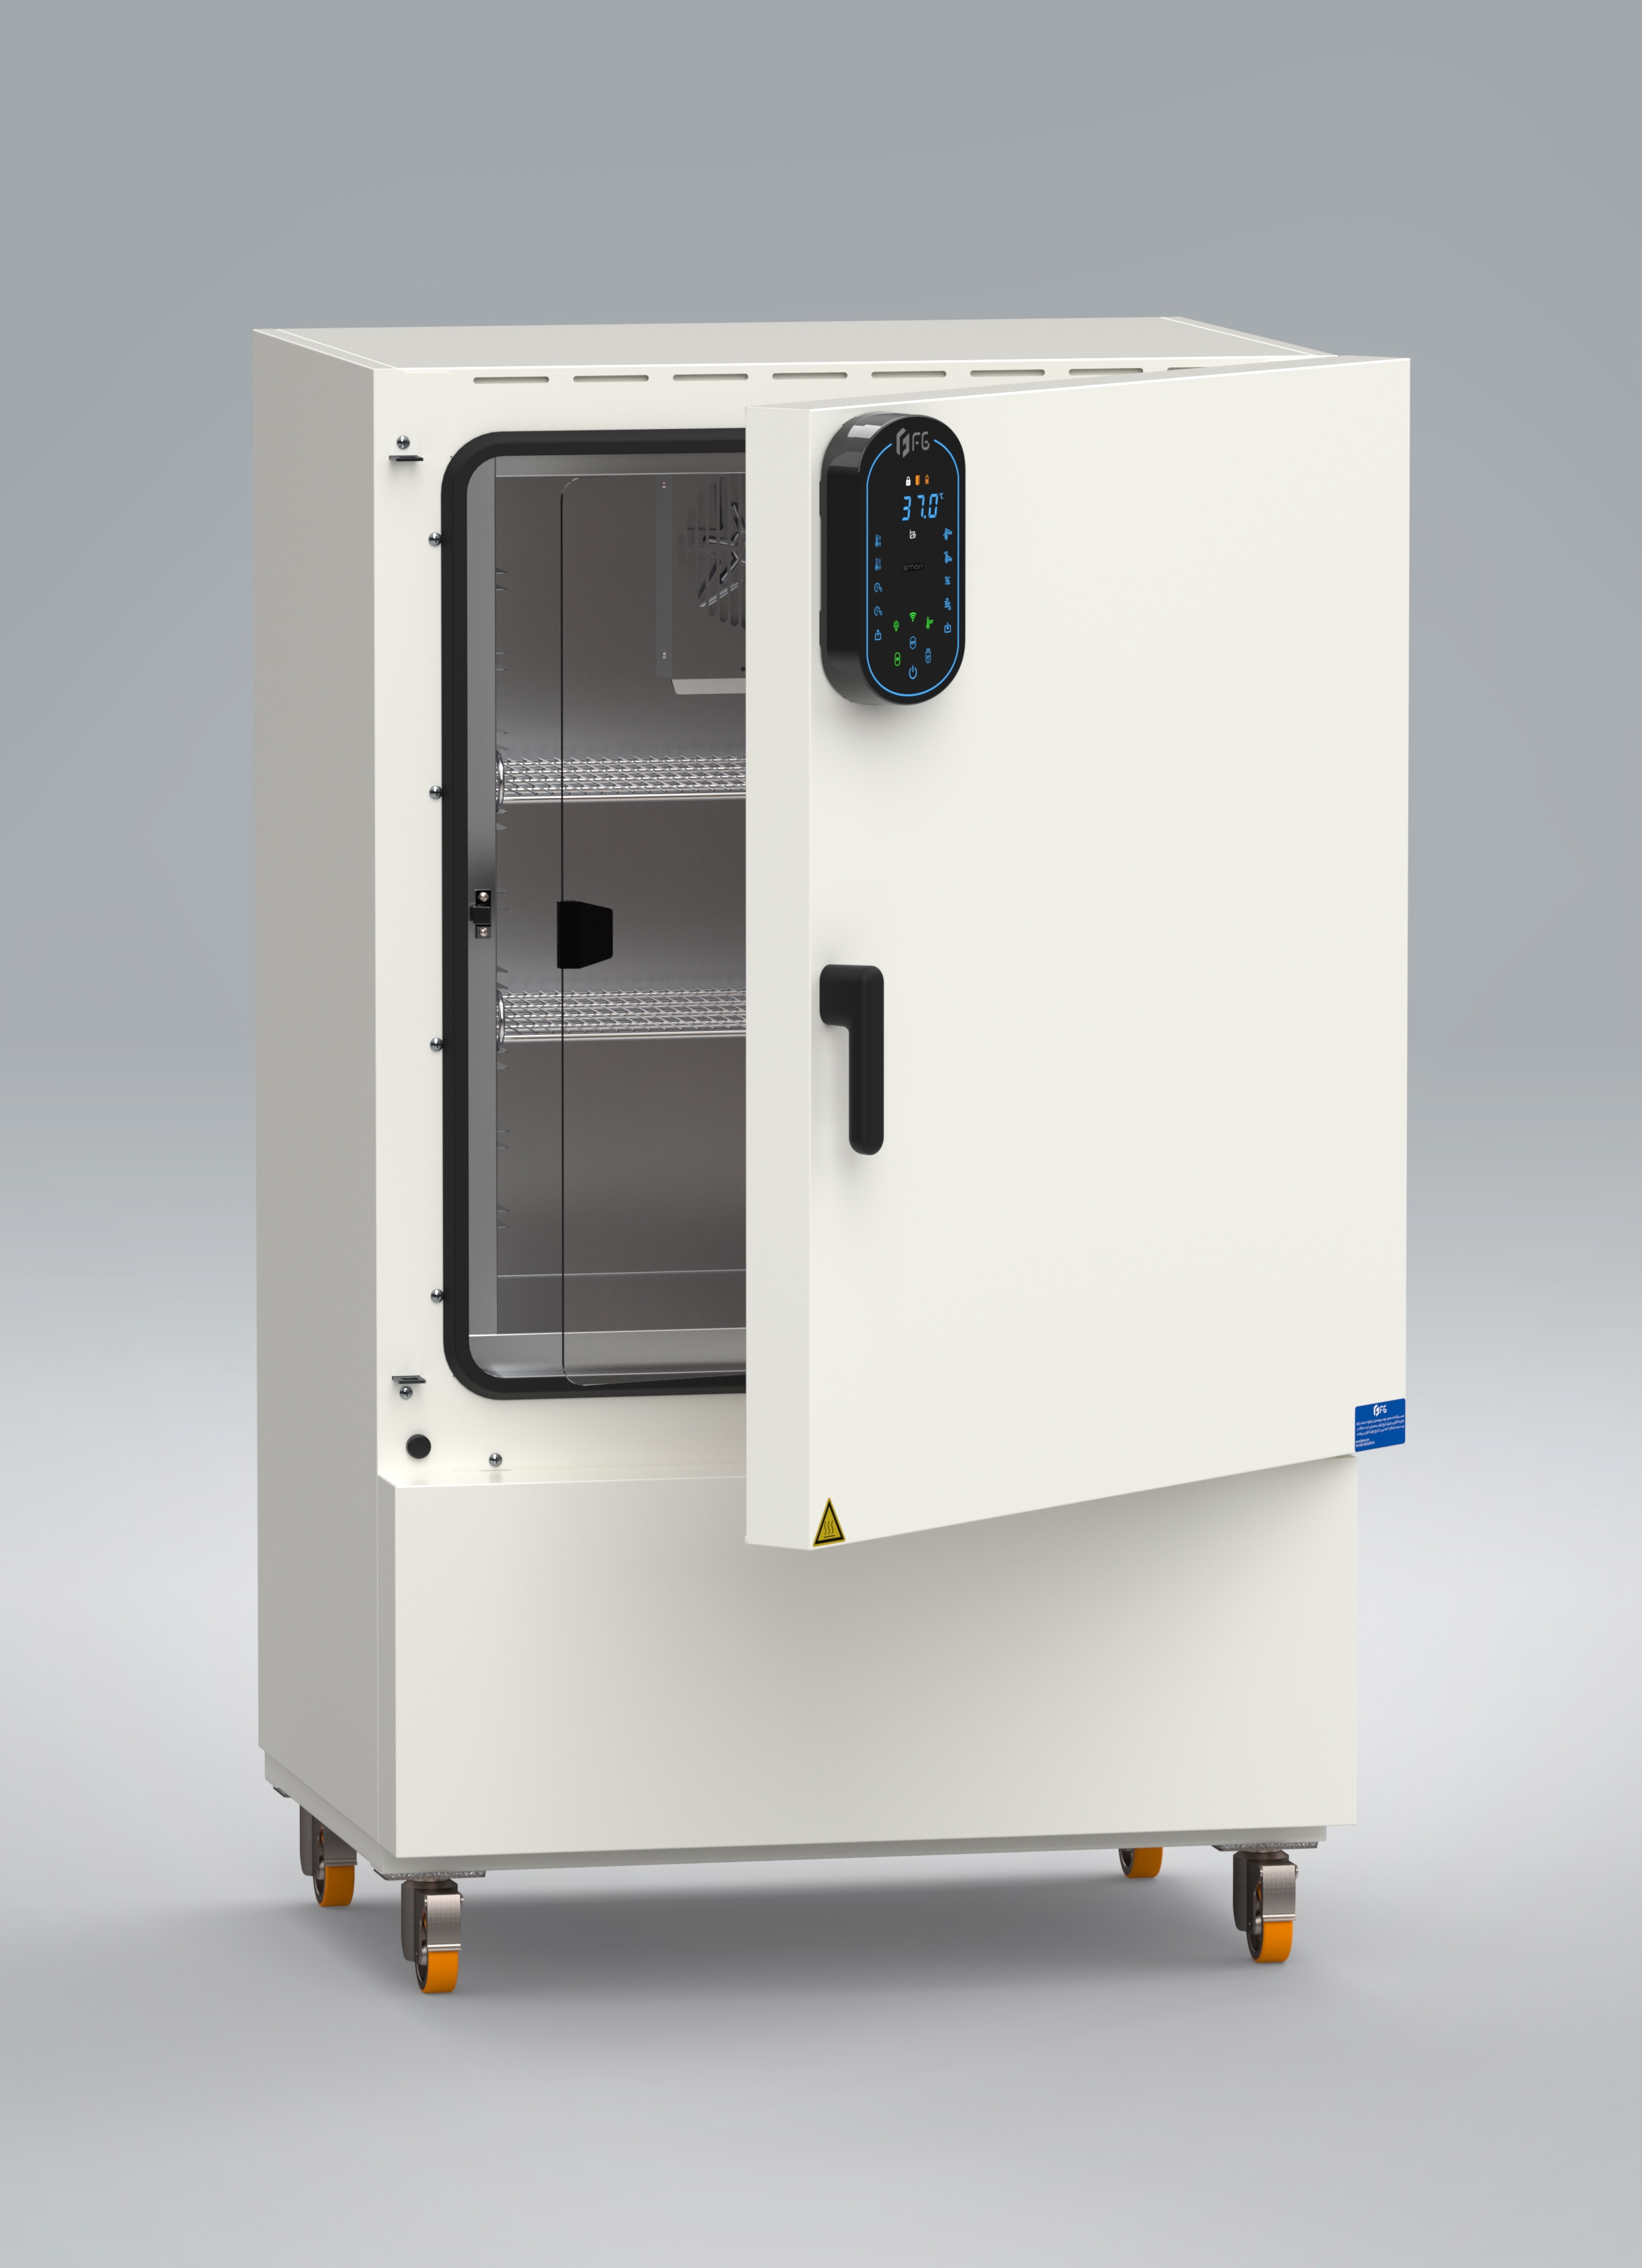 انکوباتور هوشمند یخچالدار آزمایشگاهی - Smart hot & cold incubator - FG - دستگاه - دستگاه ها و ملزومات آزمایشگاهی - فن آزما گستر